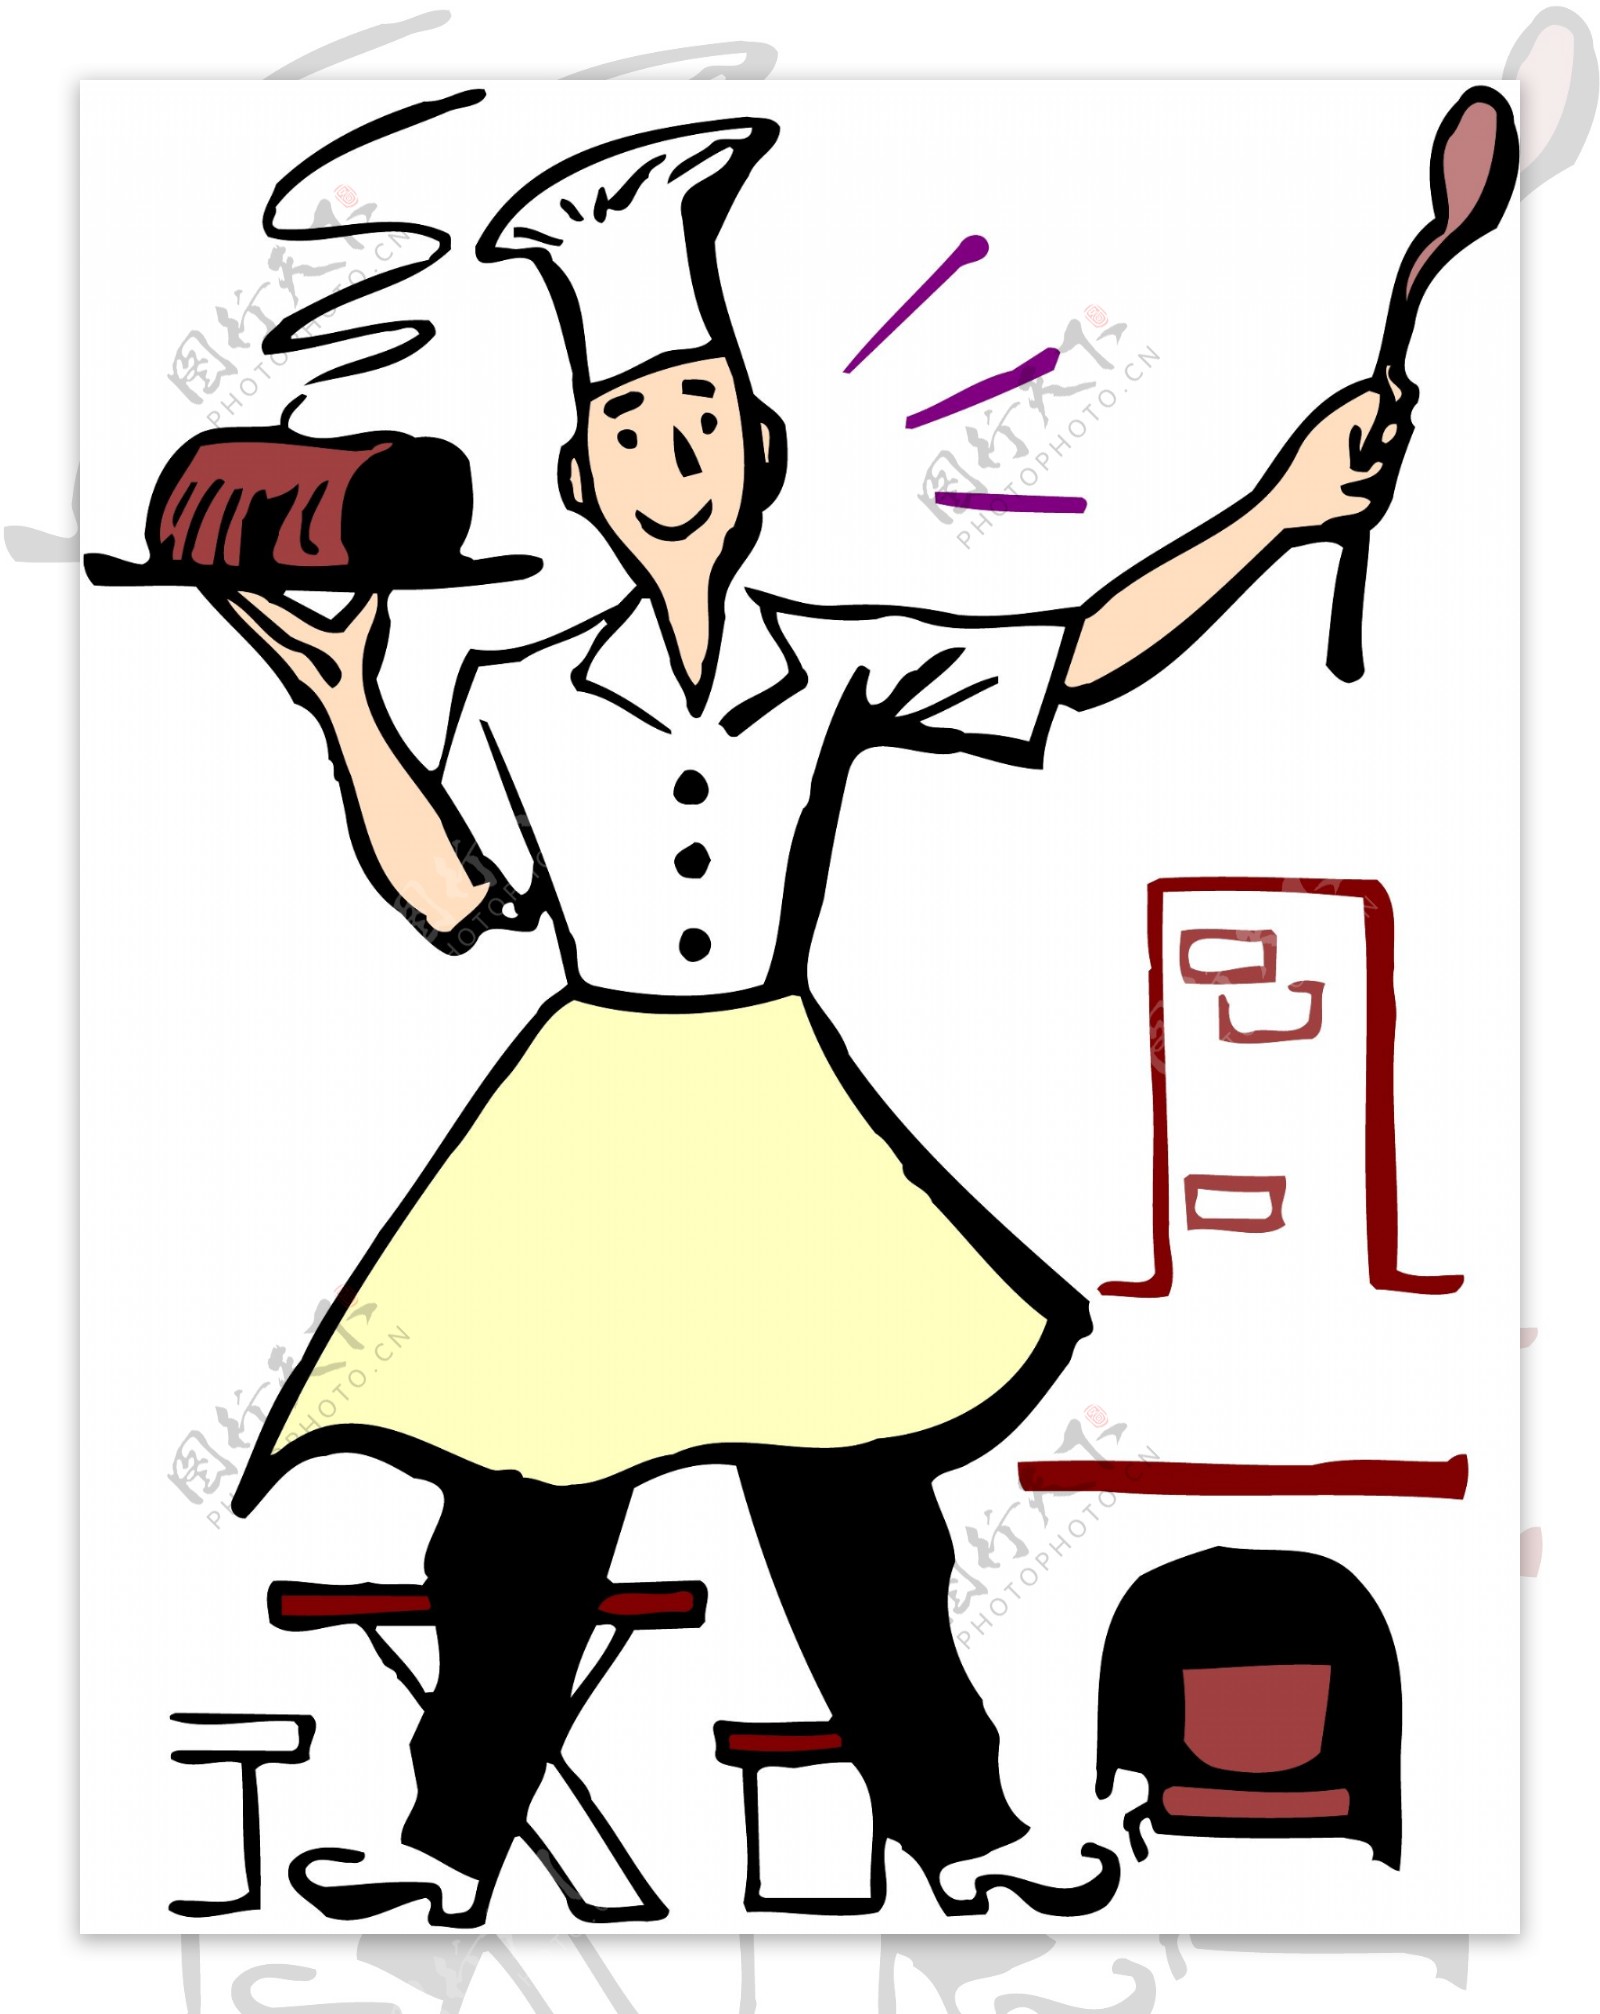 厨师卡通漫画人物素材人物矢量图人物矢量图下载矢量图片矢量图下载矢量图库厨师